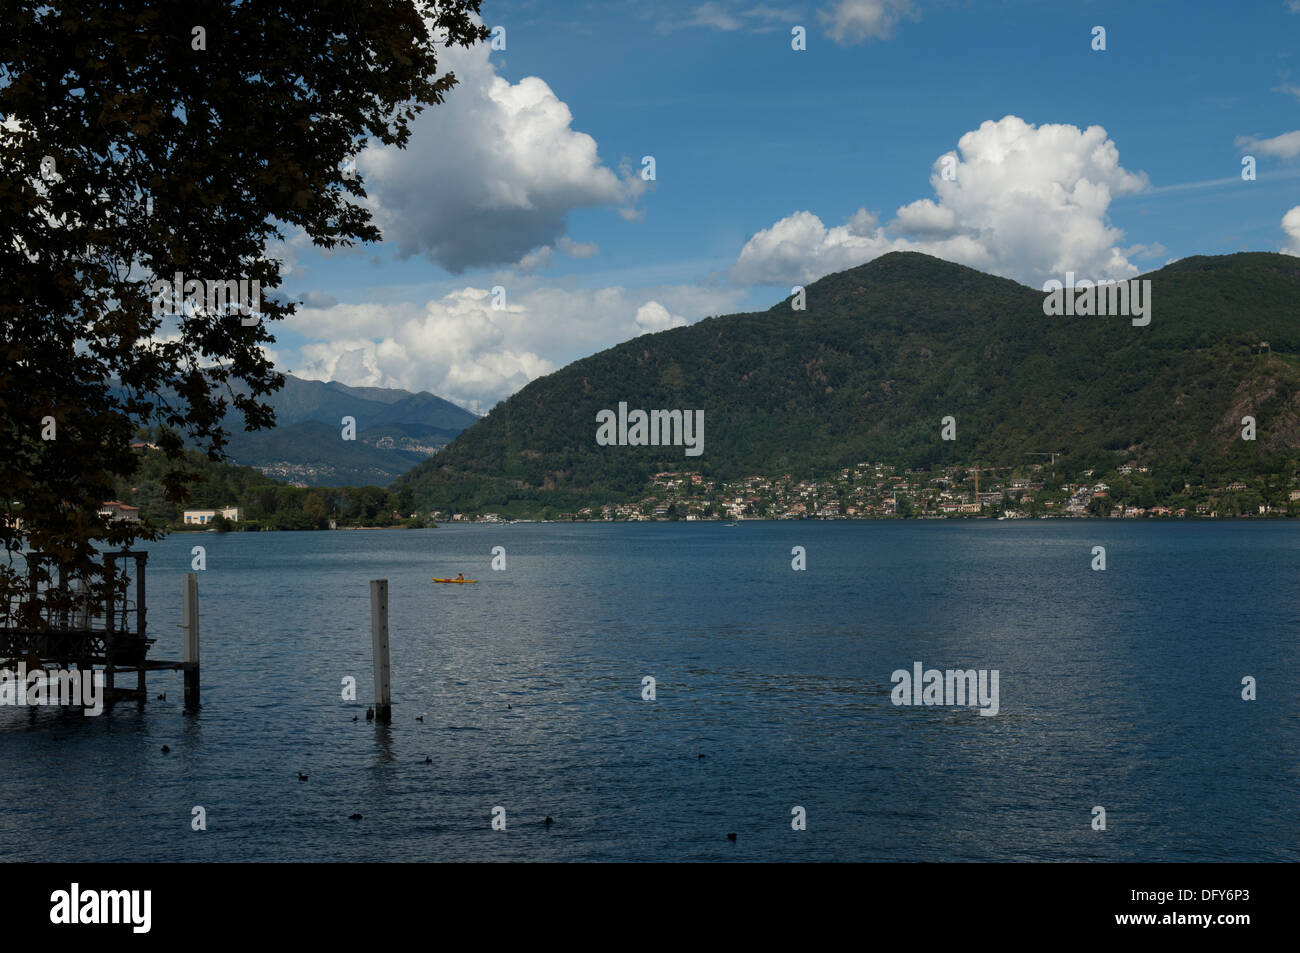 Switzerland, Morcote, Lake Lugano, travel, outdoors, landscape, day, Stock Photo